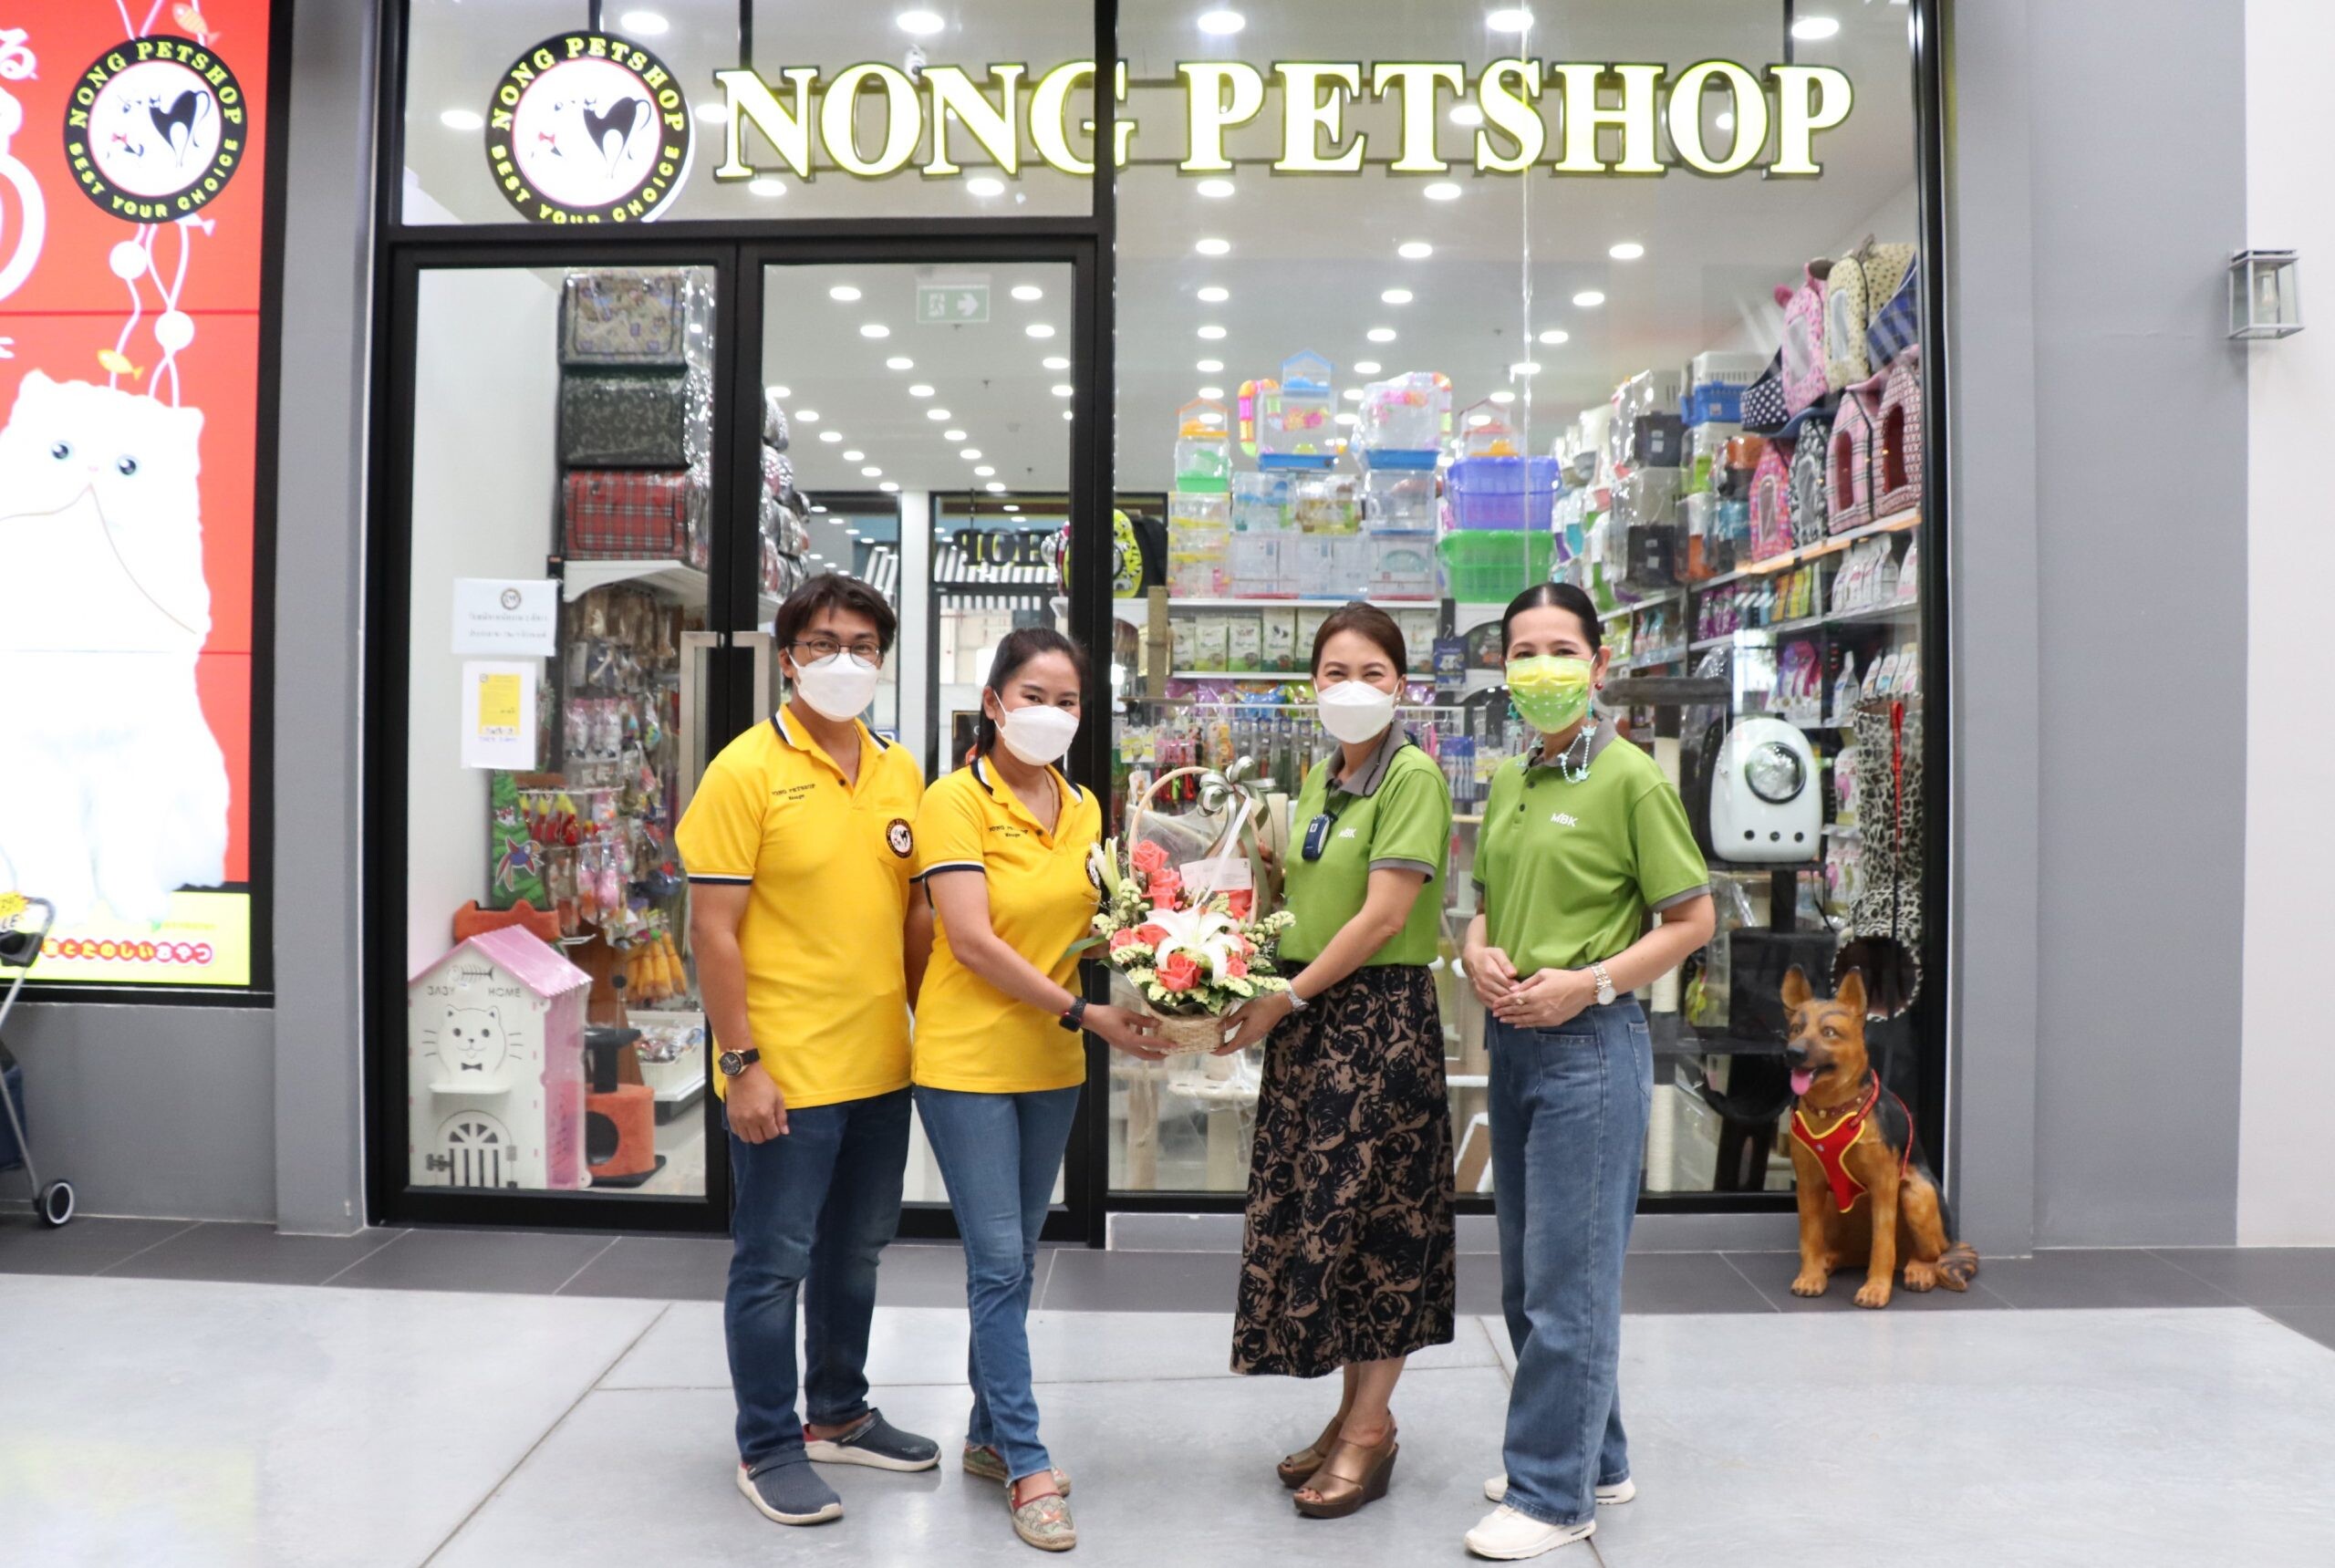 เดอะไนน์ เซ็นเตอร์ ติวานนท์ ต้อนรับ NONG PETSHOP เสริมทัพร้านค้าและบริการเพื่อสัตว์เลี้ยงตัวโปรดของทุกคน